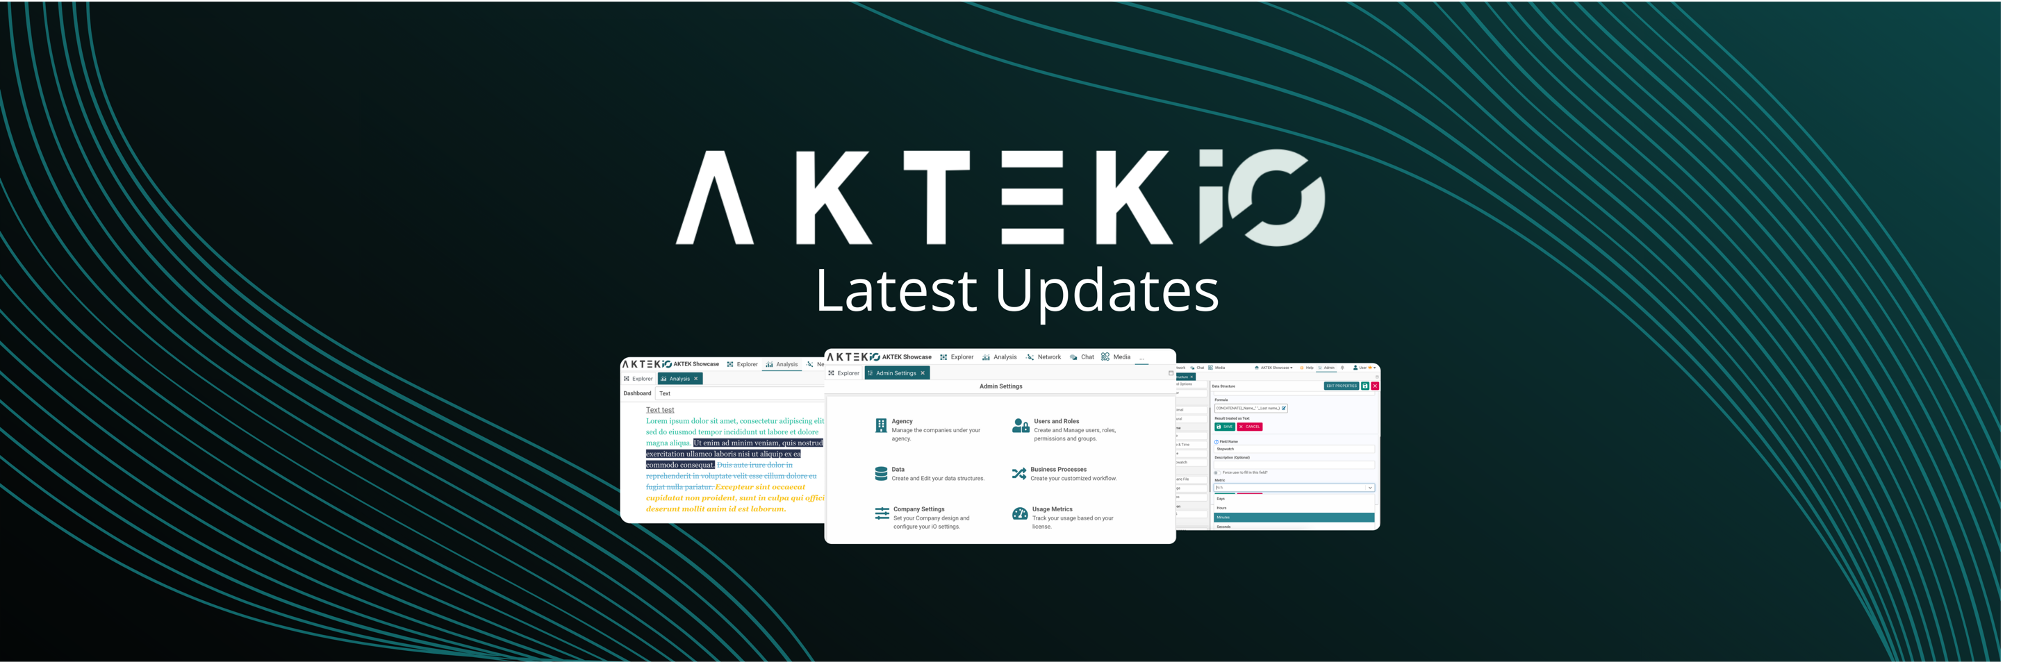 AKTEK iO software updates